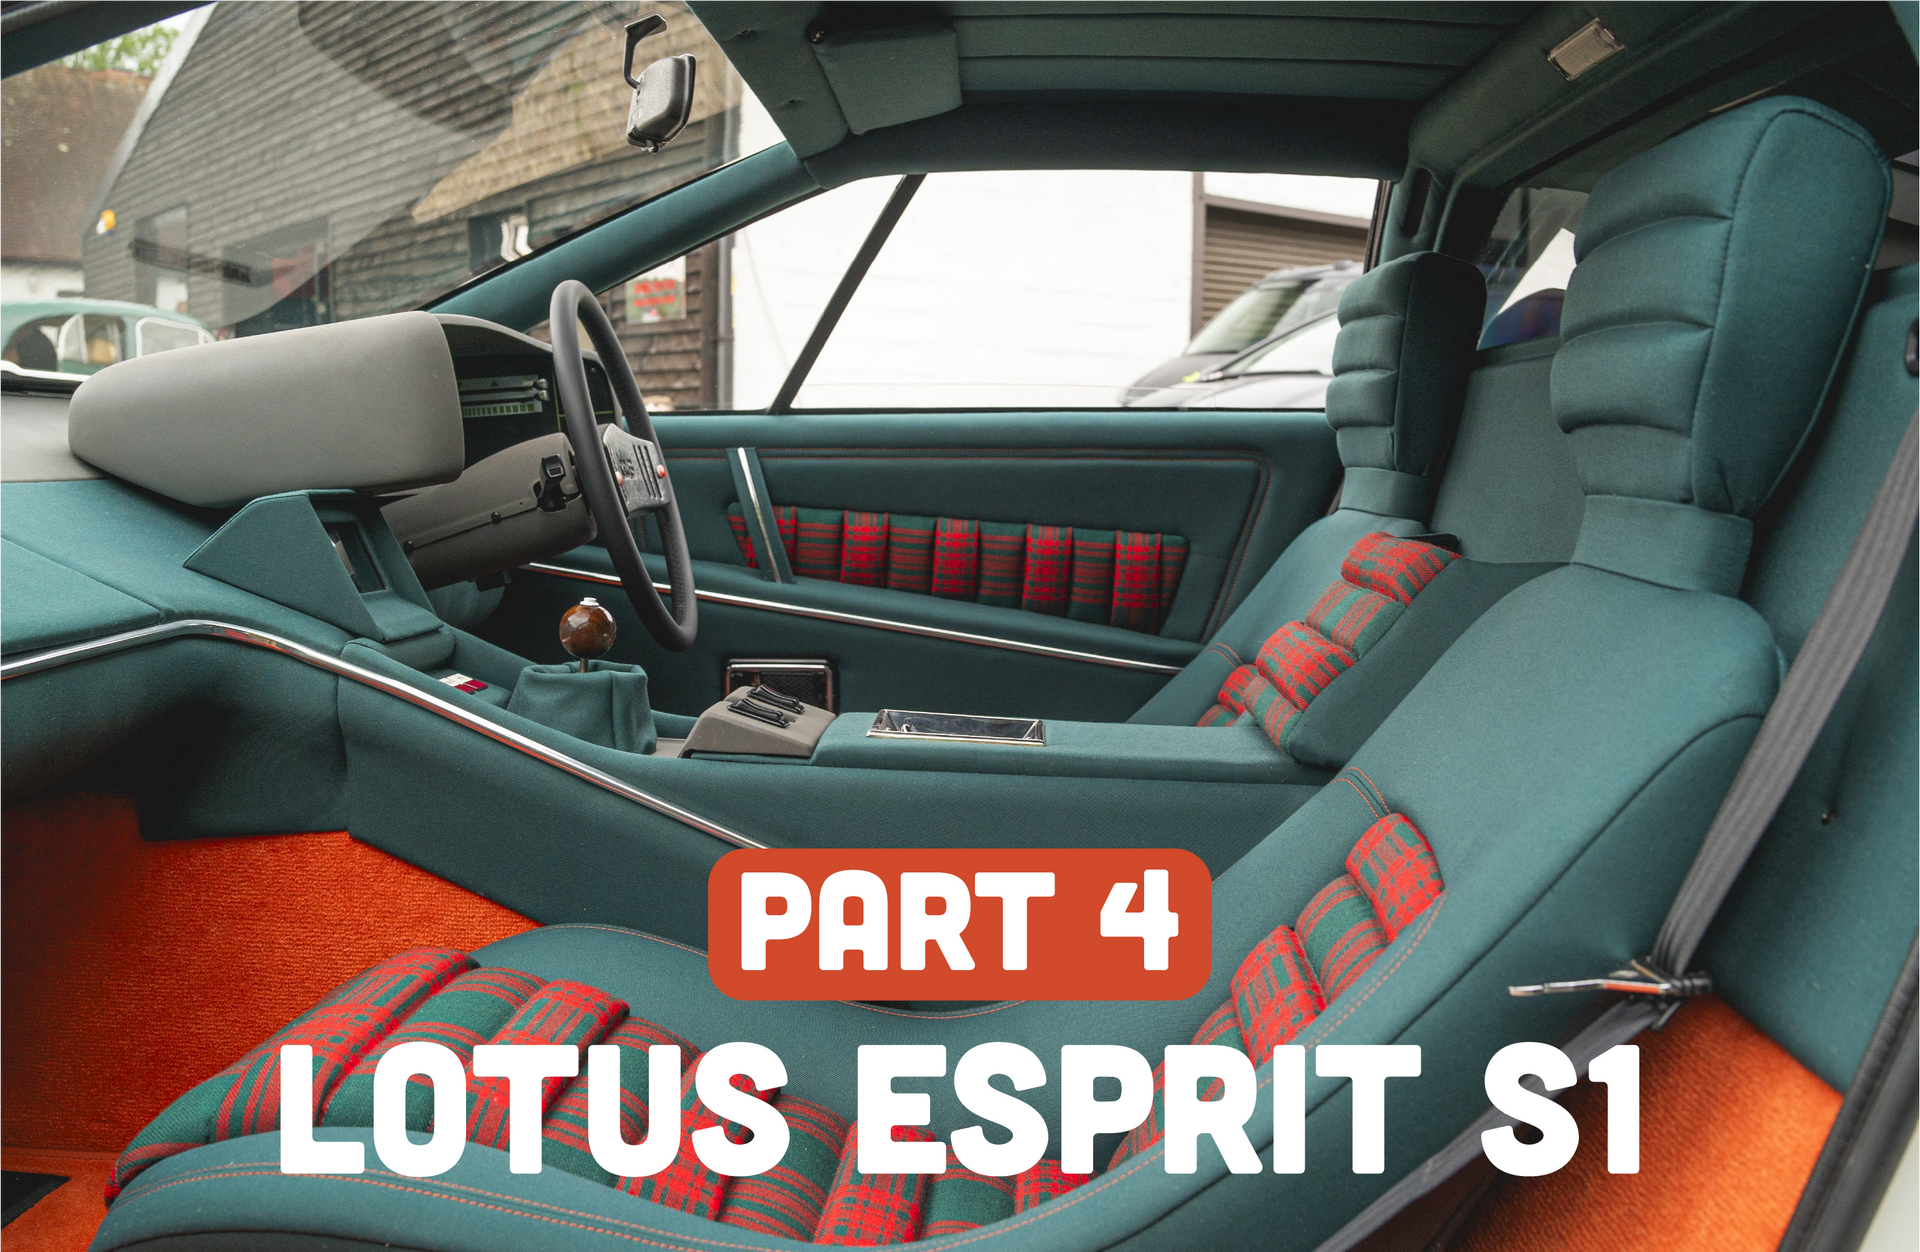 Lotus esprit s1 interior retrim restoration tartan bond james 007 seats d:class dclass upholstery